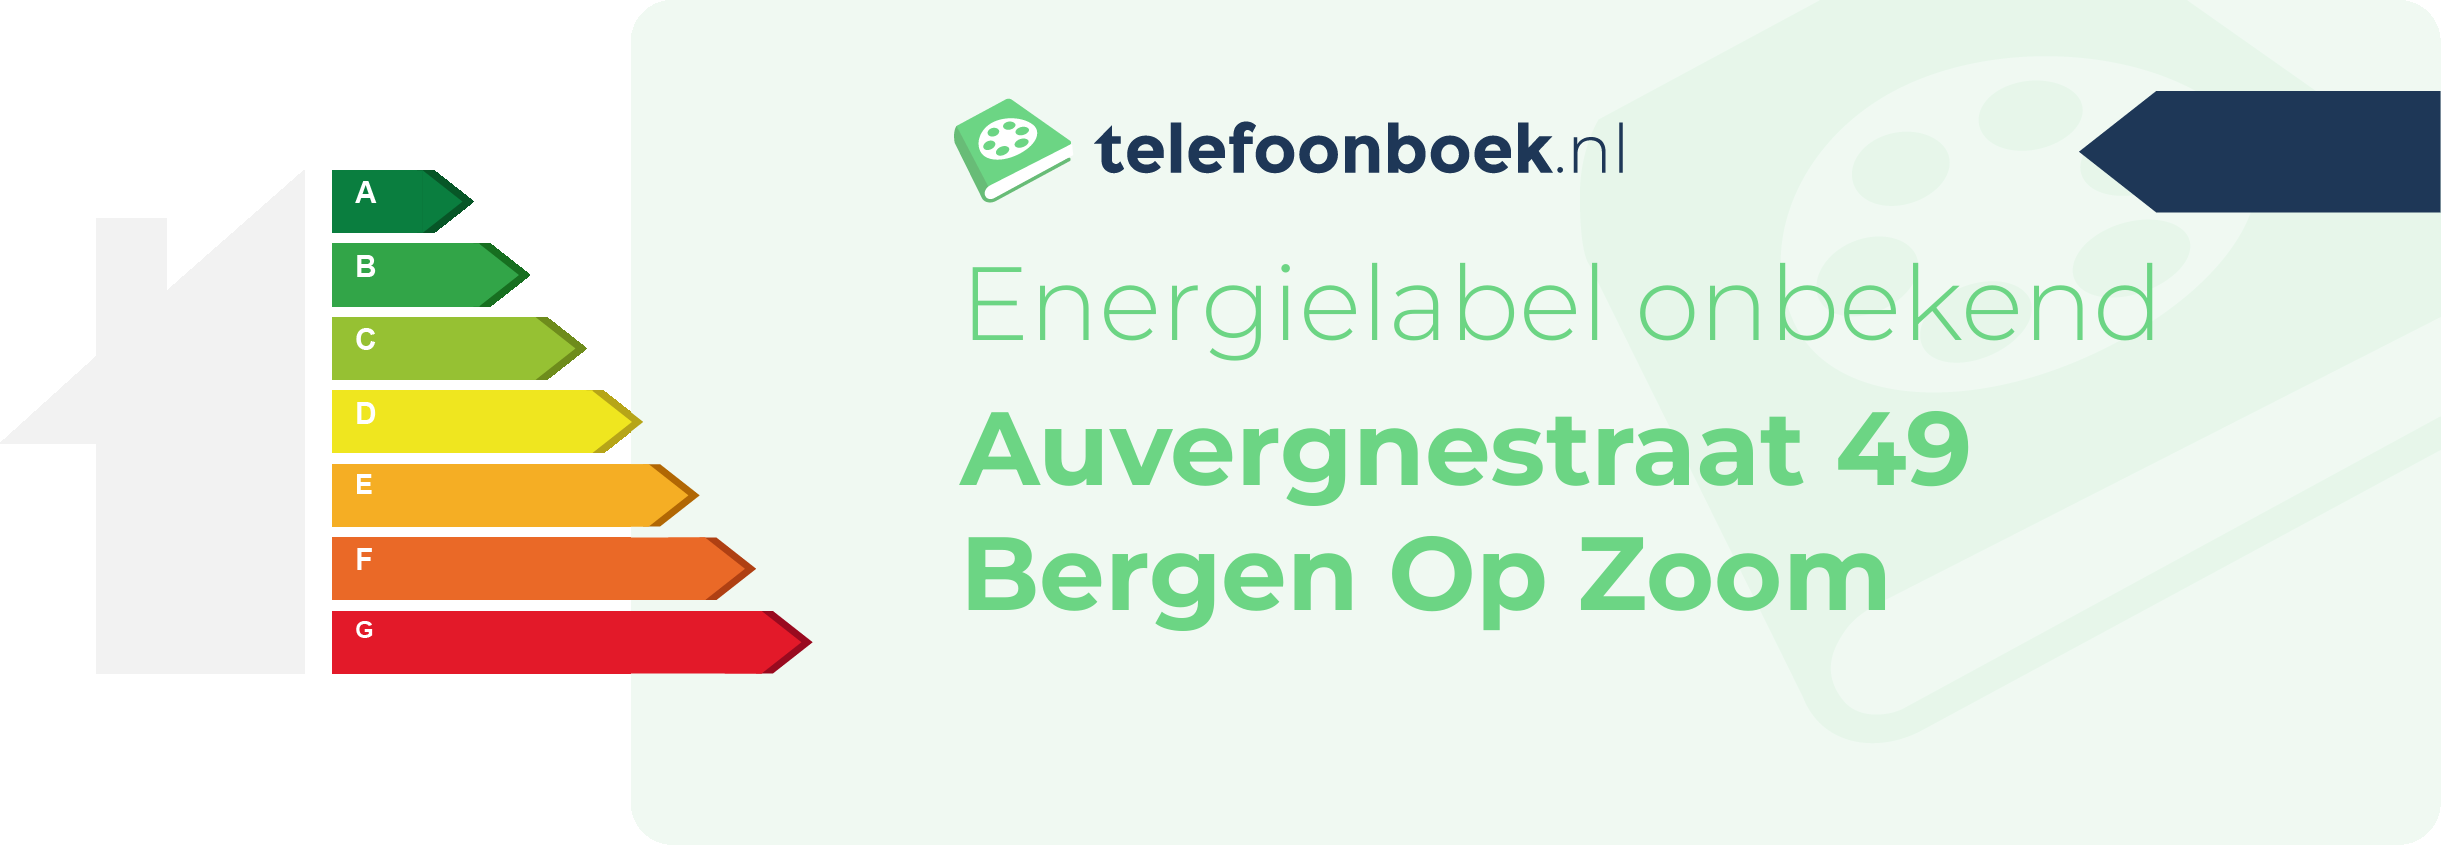 Energielabel Auvergnestraat 49 Bergen Op Zoom